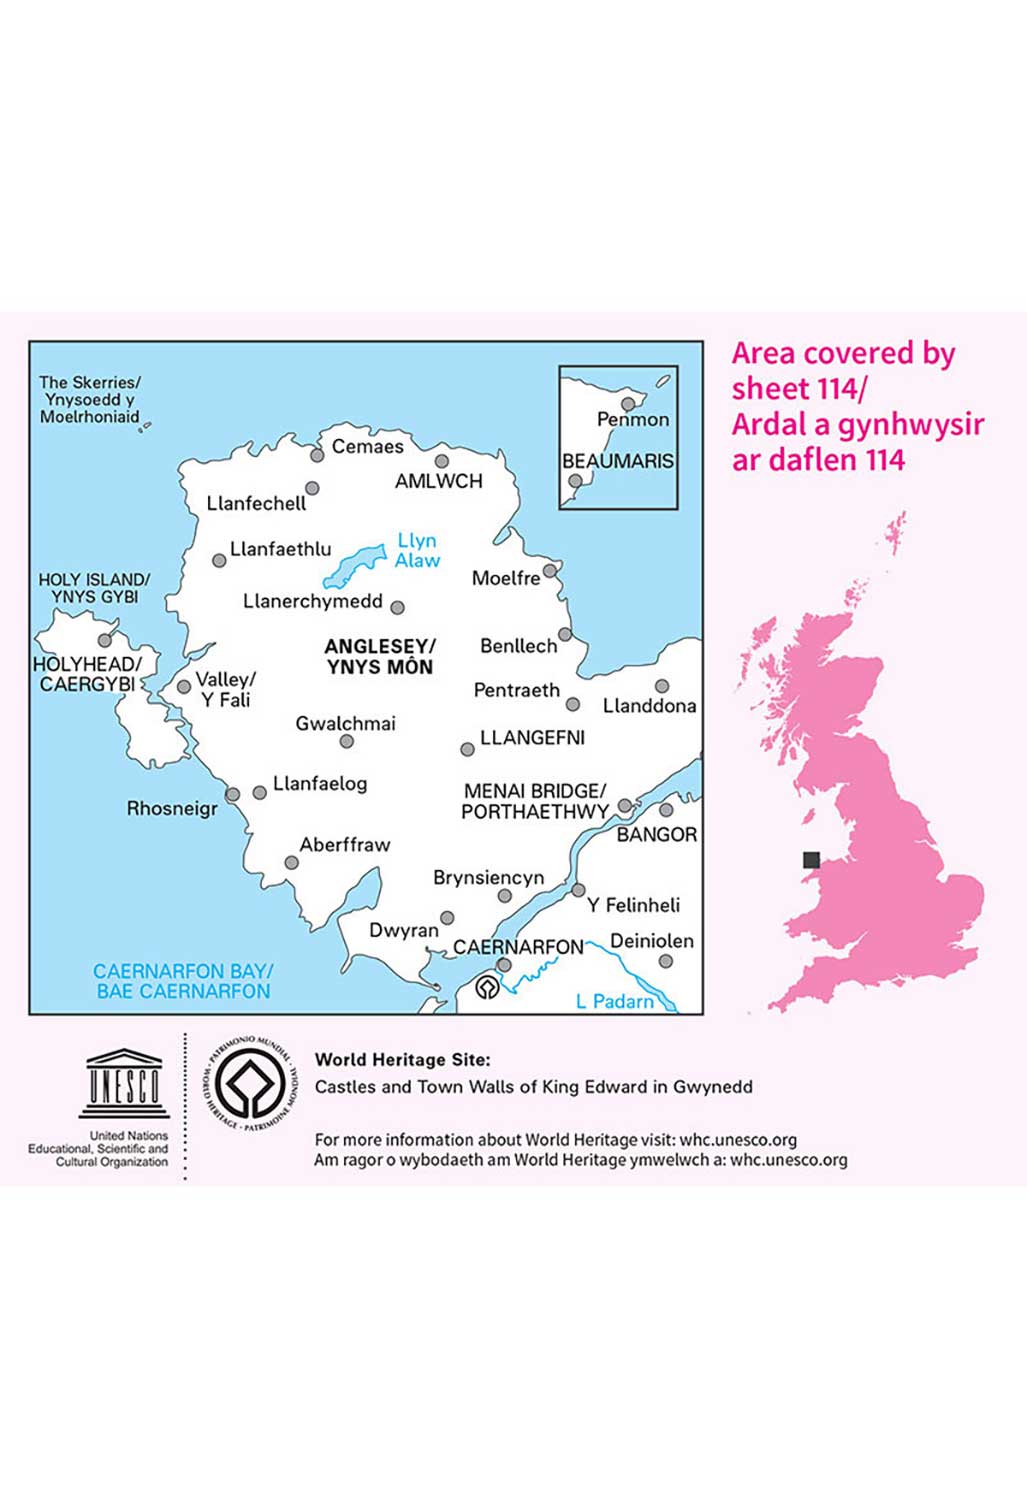 Ordnance Survey Anglesey - Landranger 114 Map